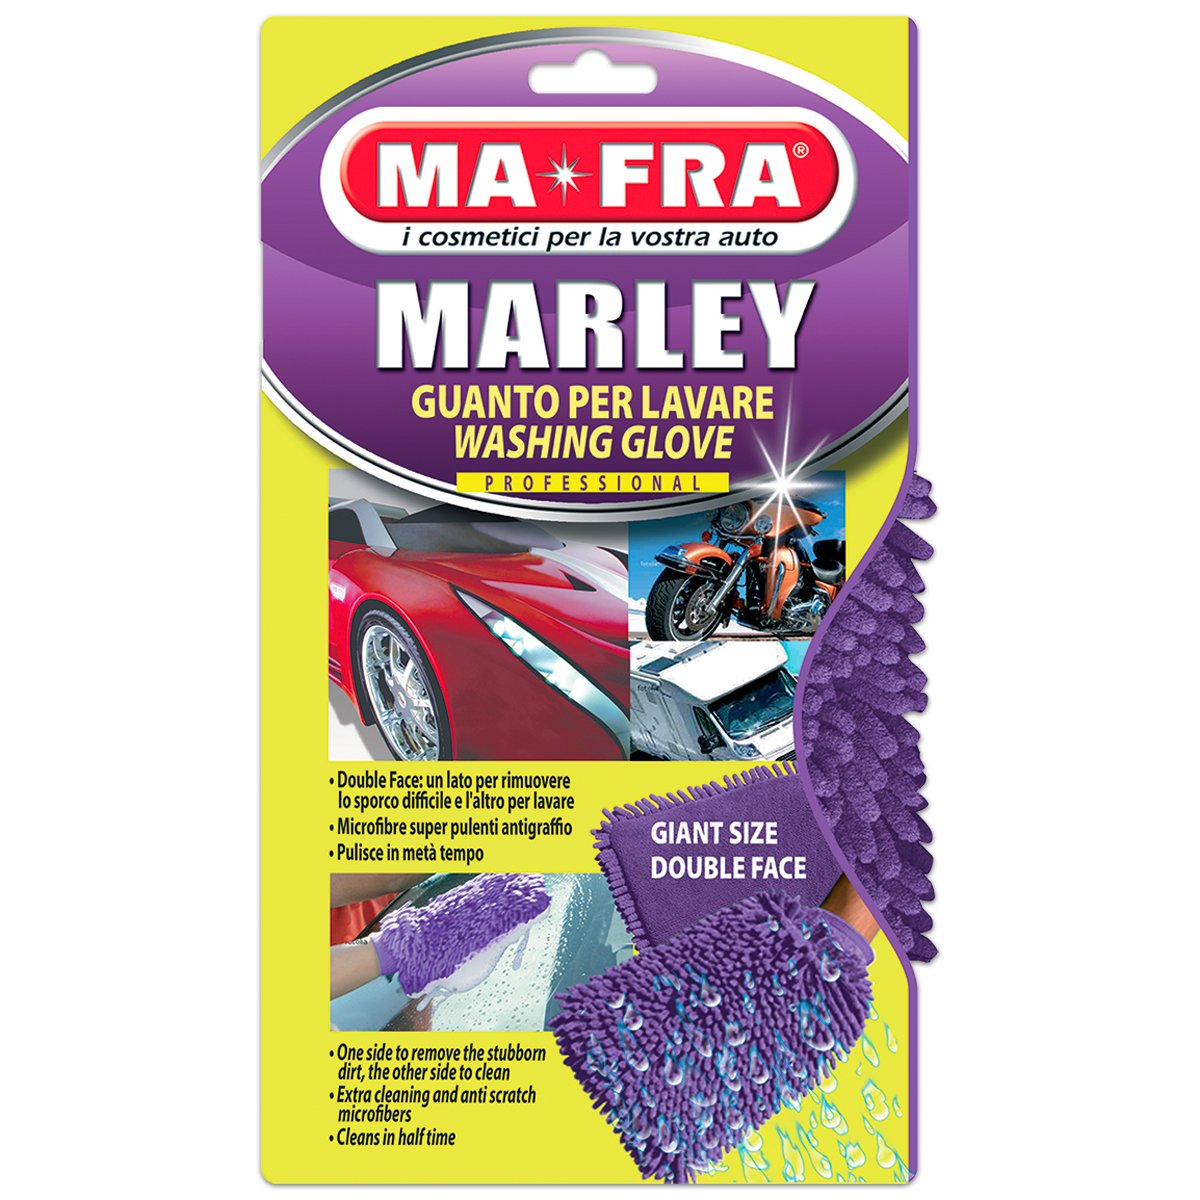 Guanto Marley - panno in microfibra per lavaggio esterni